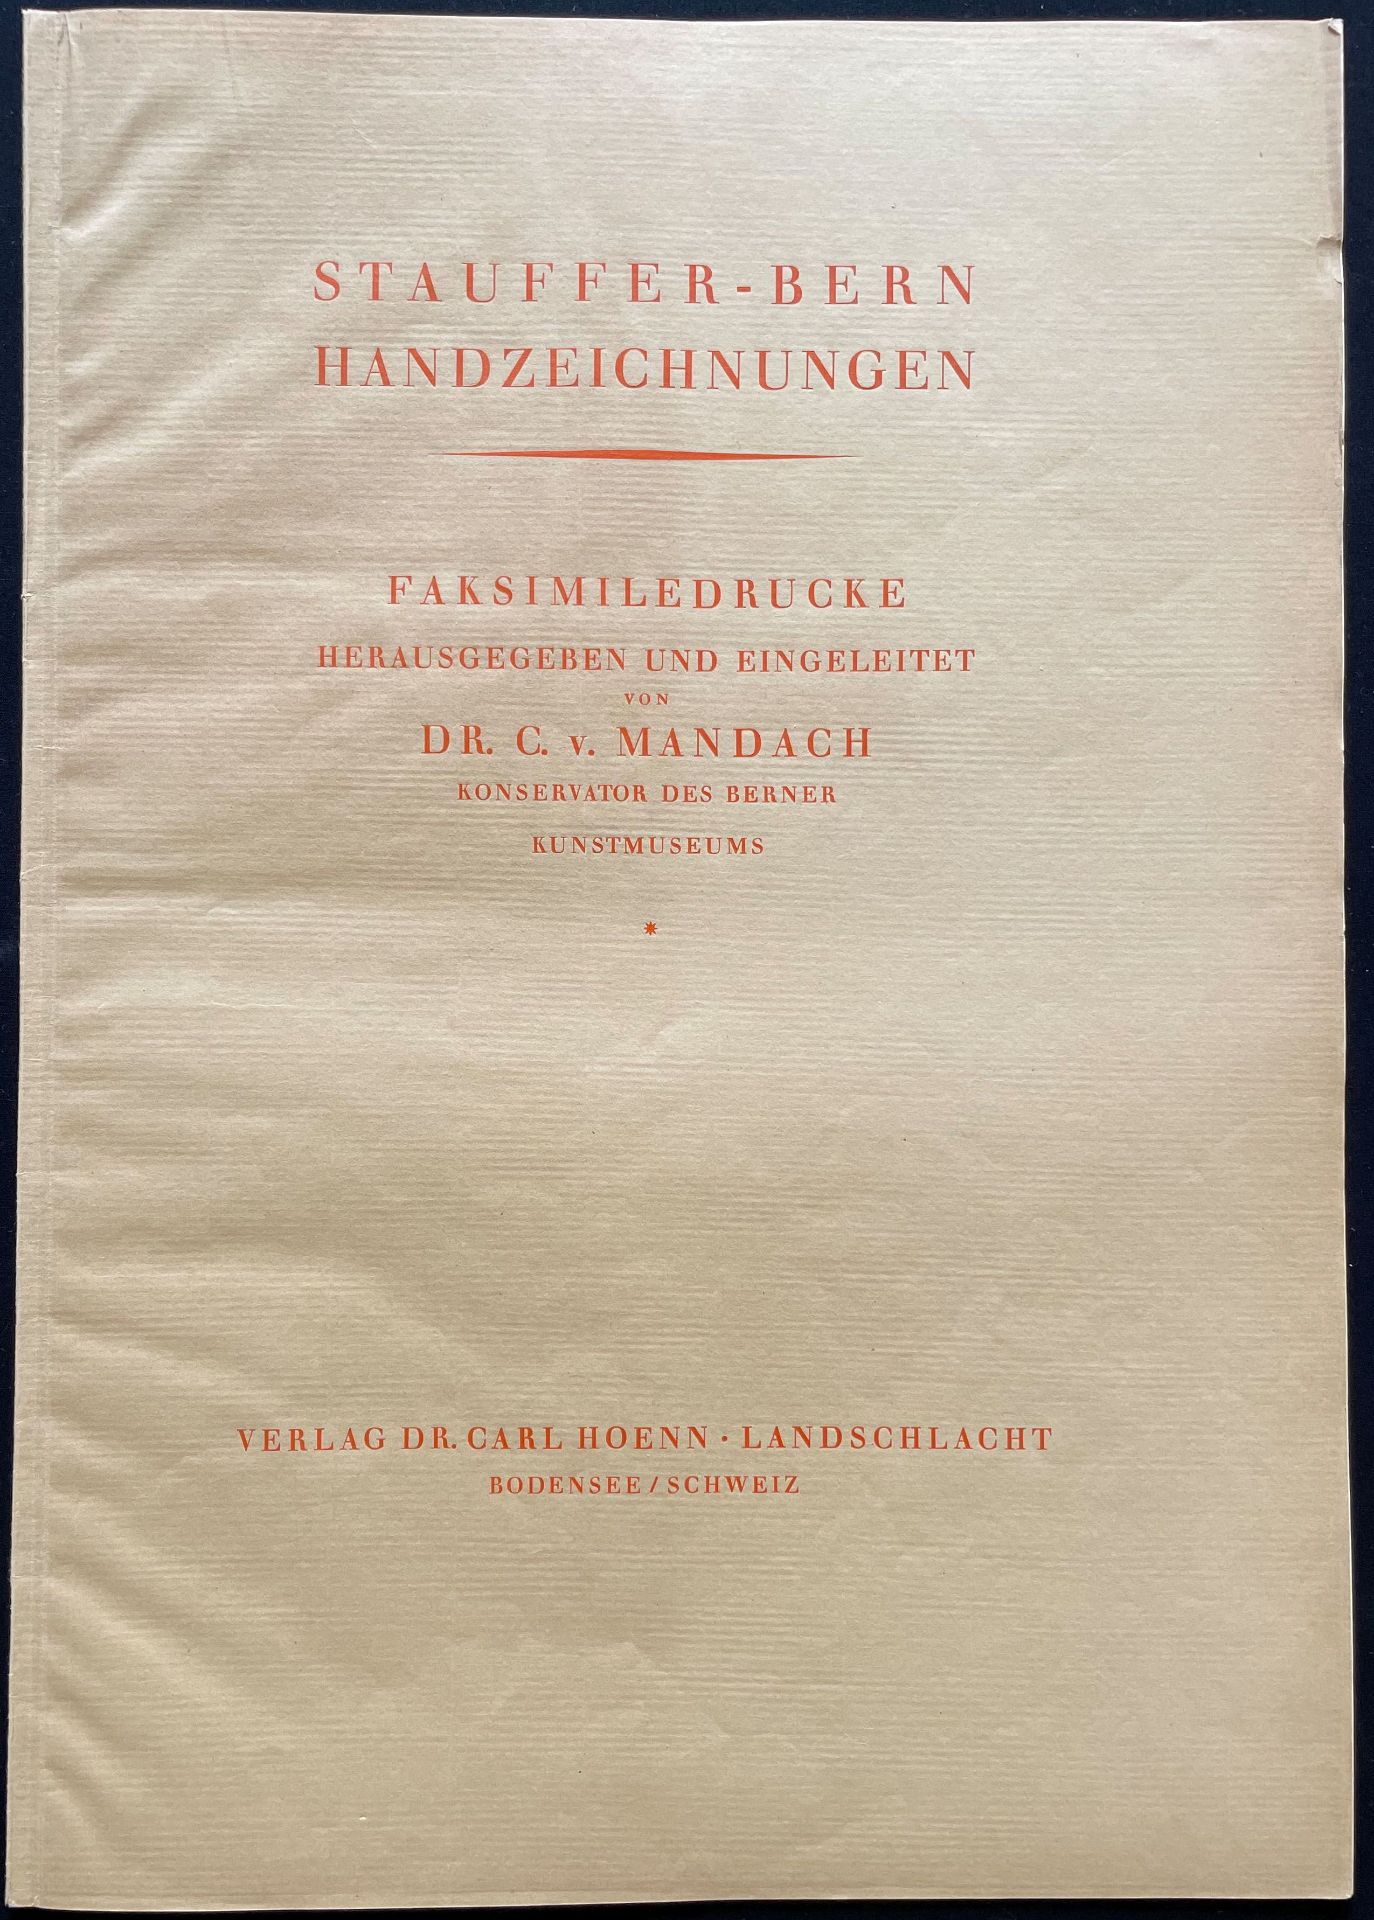 Karl Stauffer-Bern (1857-1891), Mappe mit 38 Faksimiledrucken: männliche und weibliche Akte sowie - Bild 6 aus 9